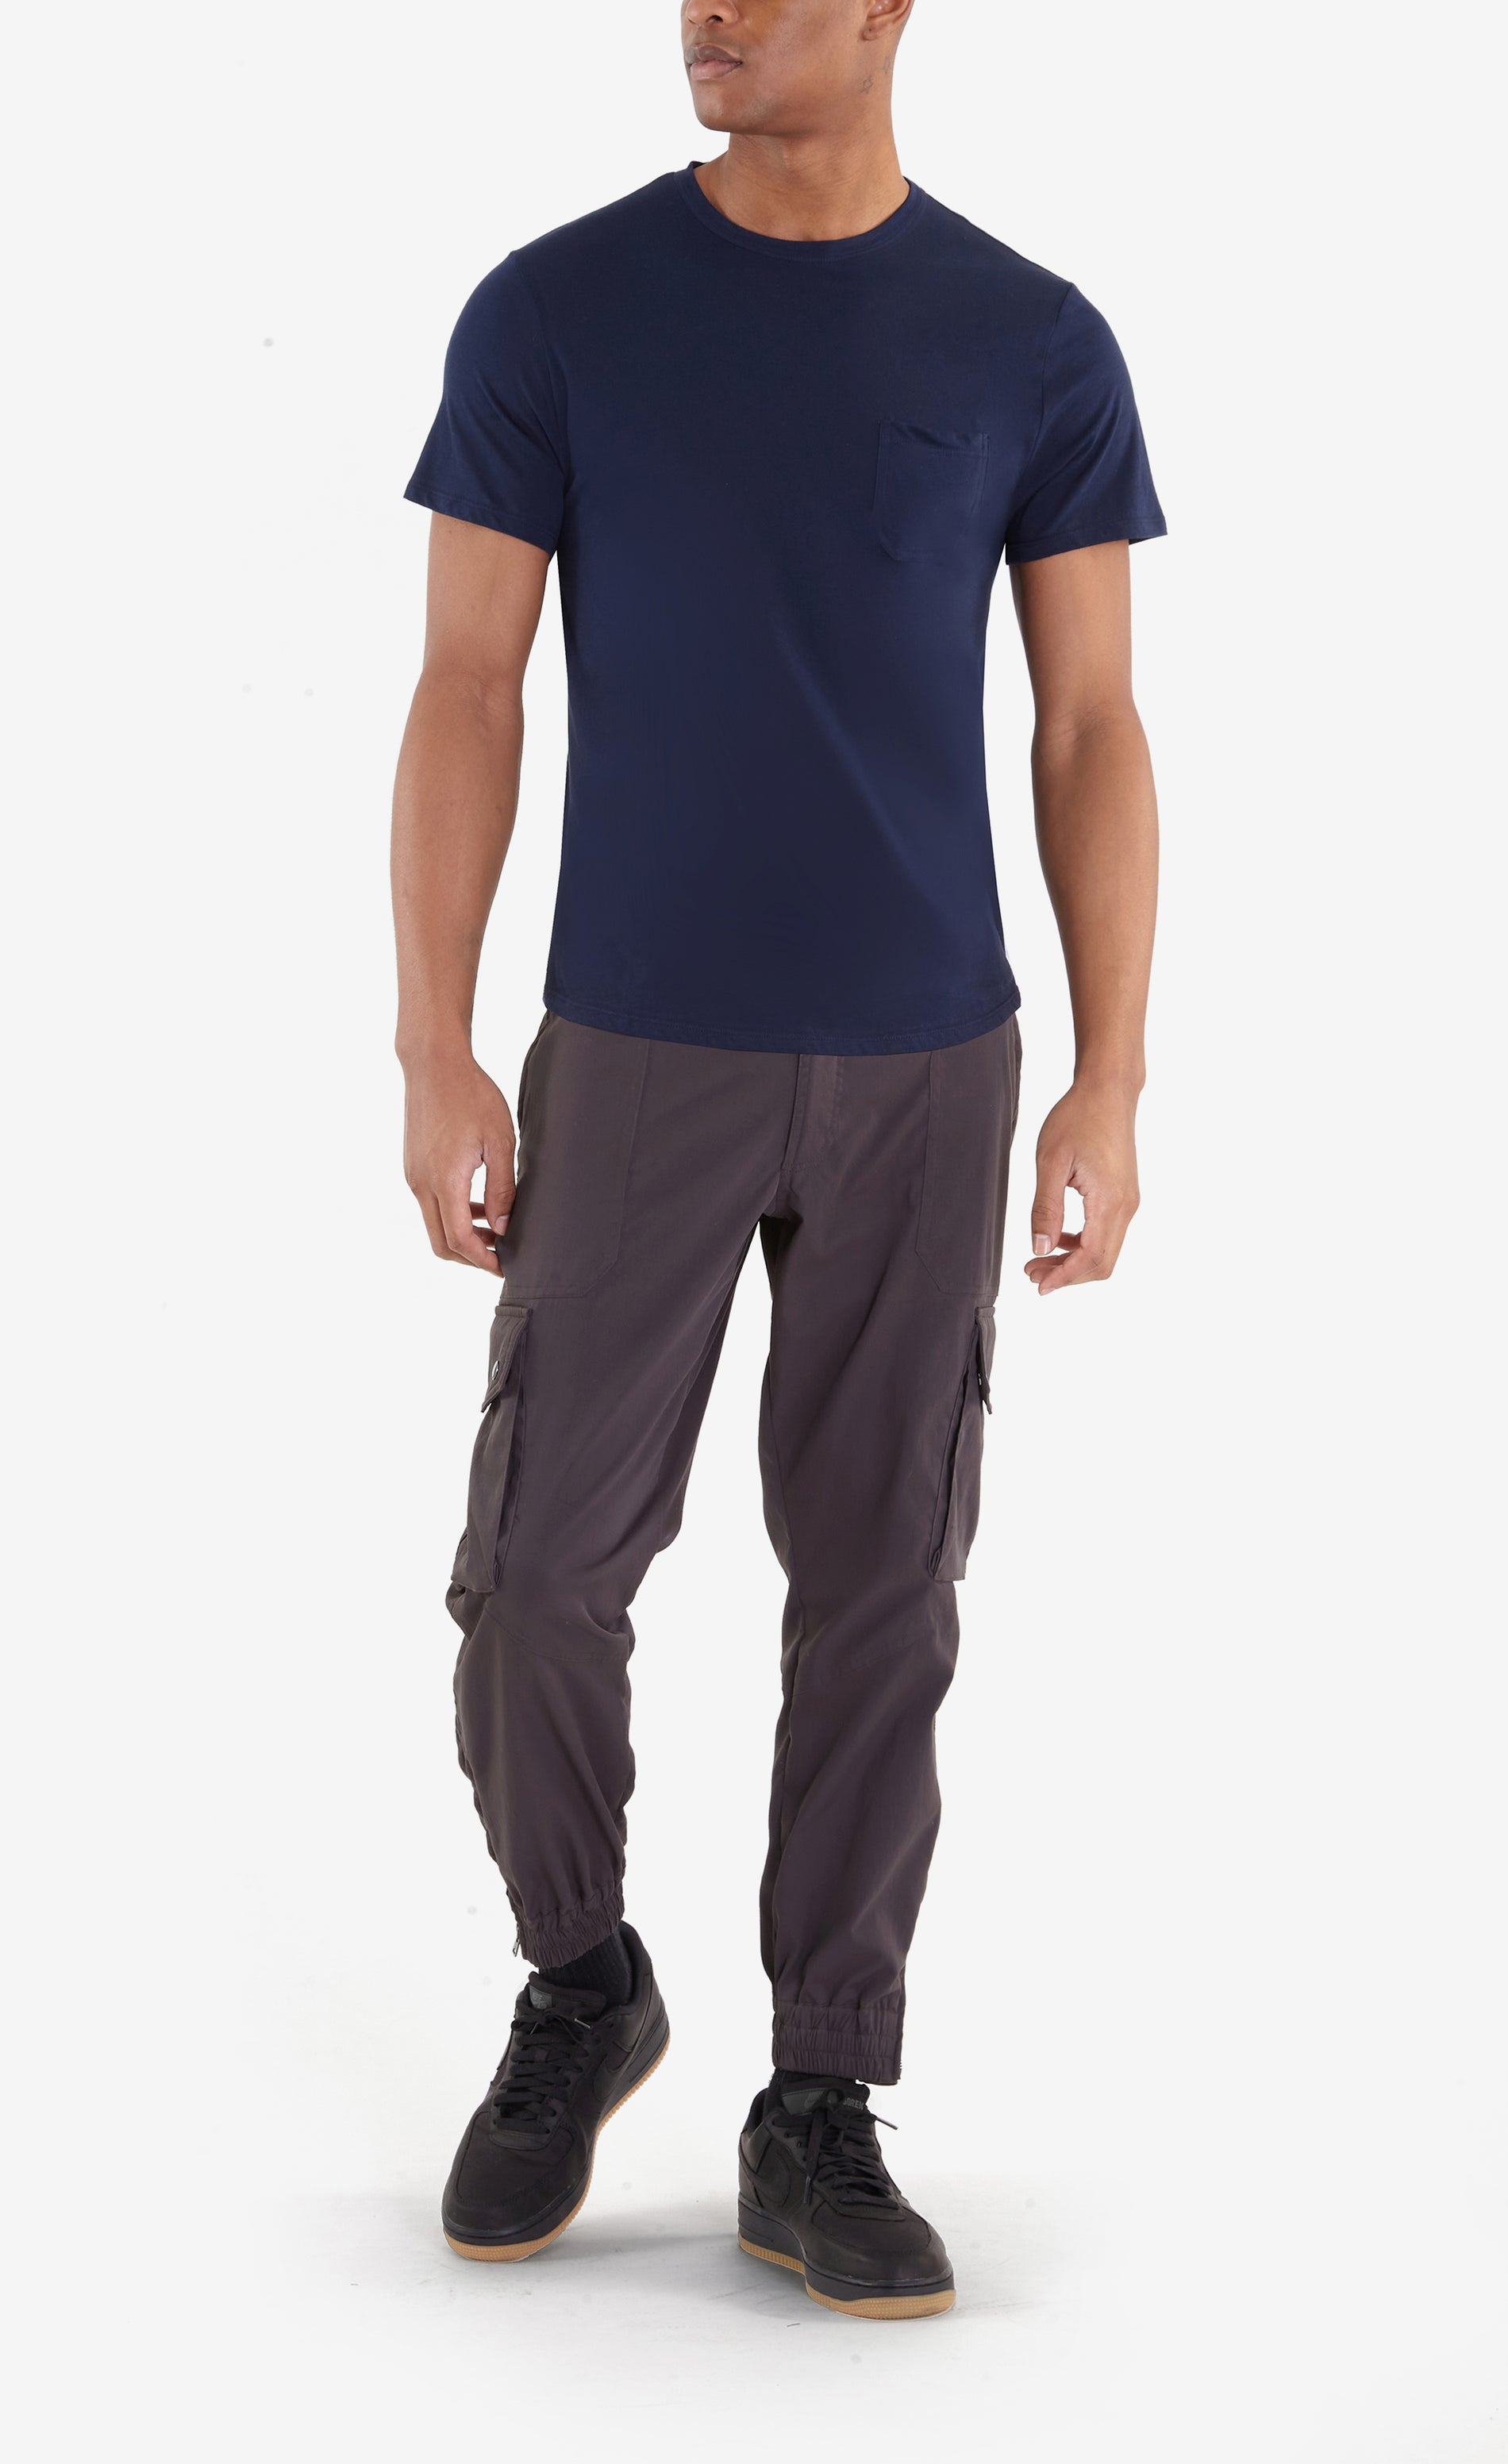 Jeremy Pocket T-Shirt